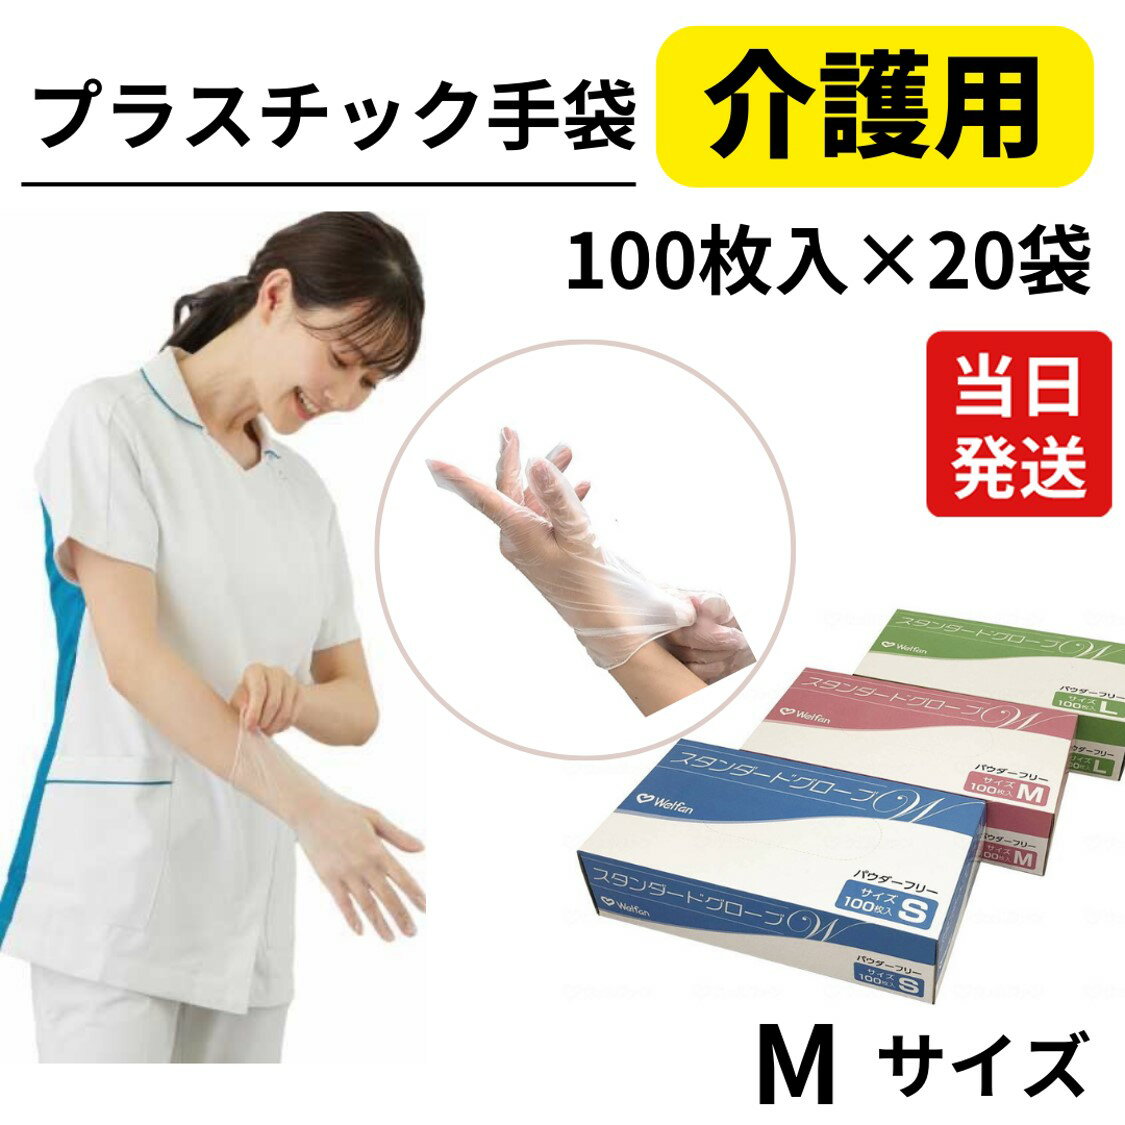 【あす楽】 介護 プラスチック グローブ 手袋 スタンダード